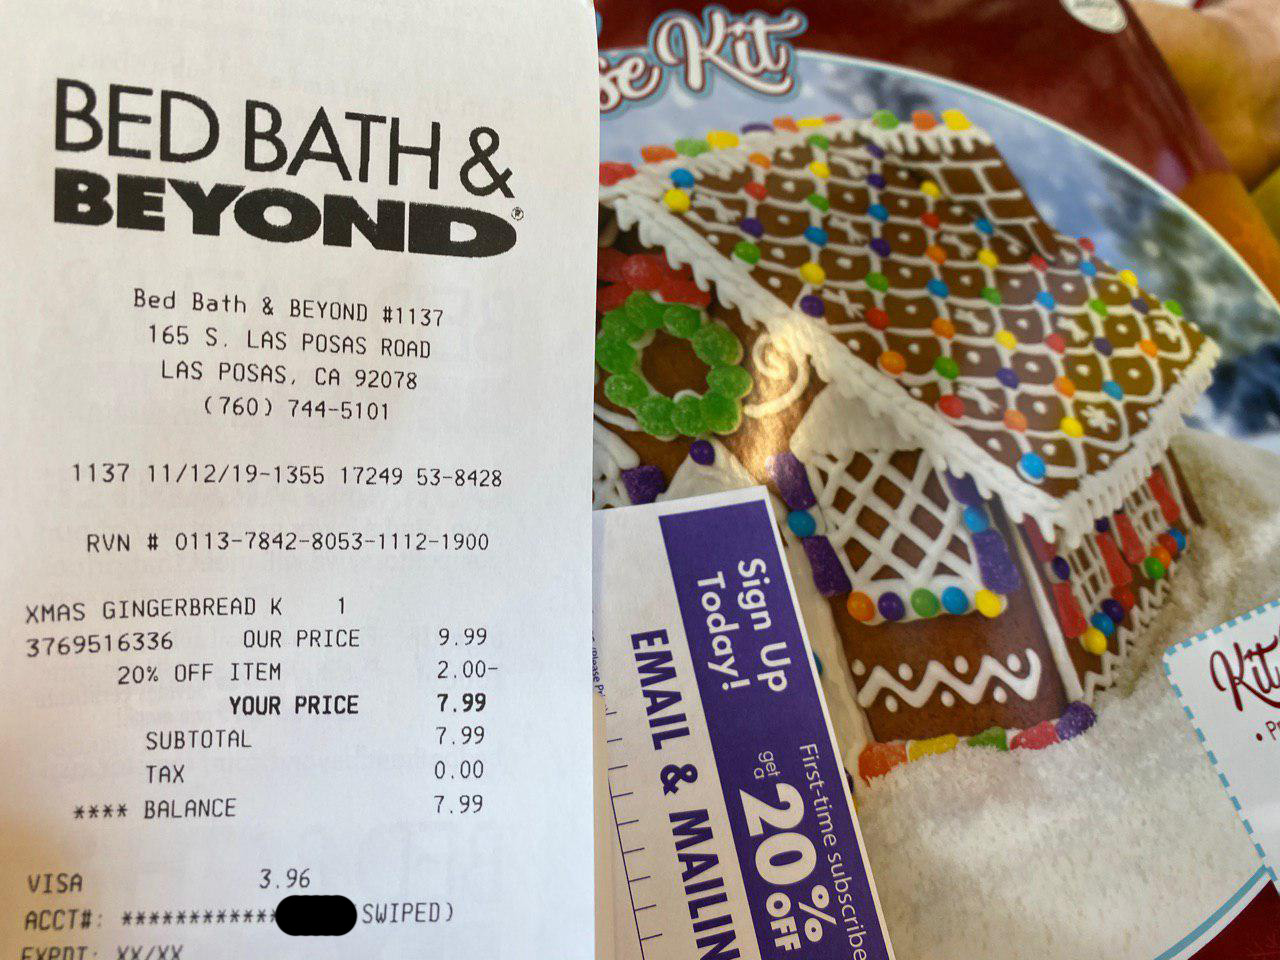 Bad Bath & Beyond 20% OFF coupon